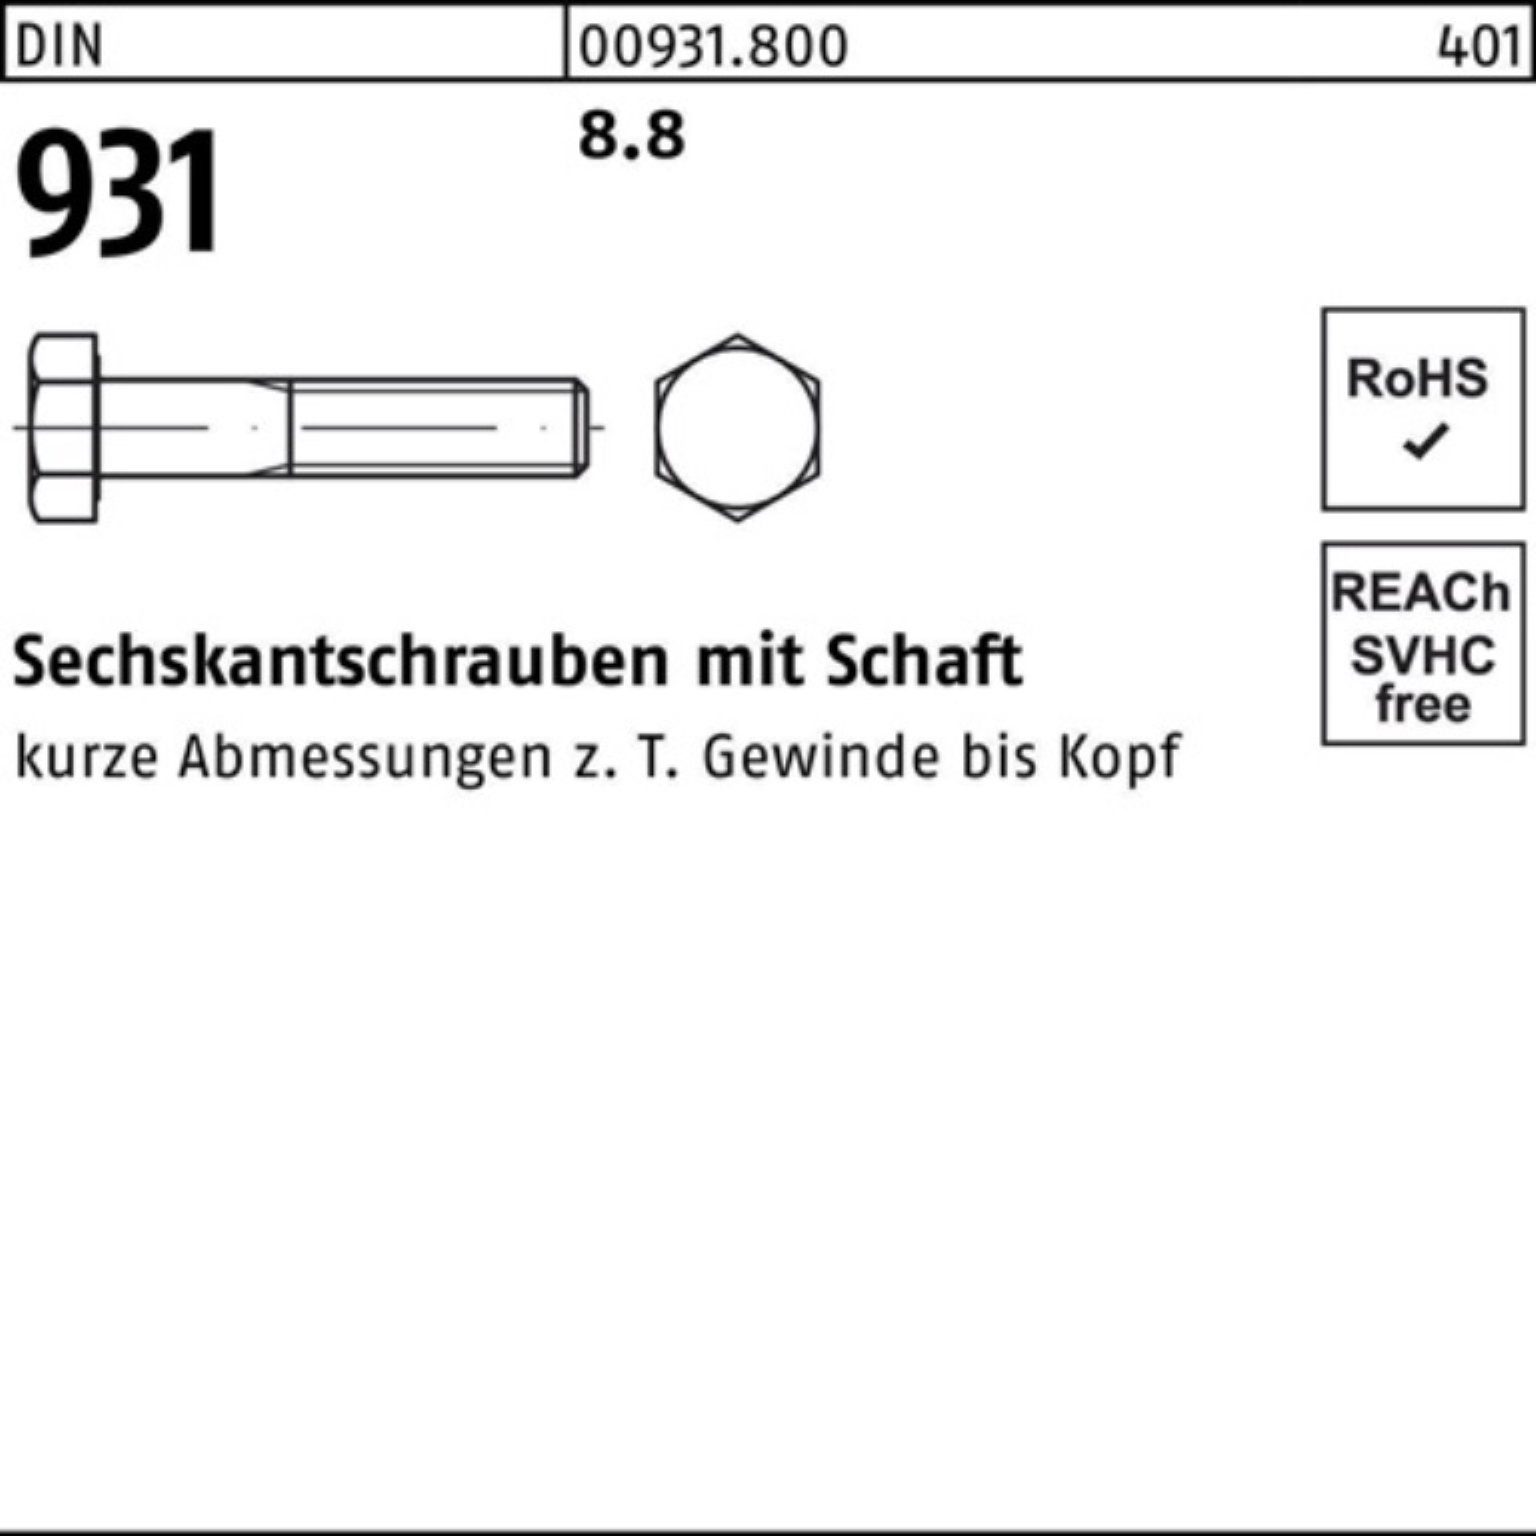 100er DIN Stück DIN M18x 8.8 Sechskantschraube Schaft Pack 1 Sechskantschraube Reyher 931 190